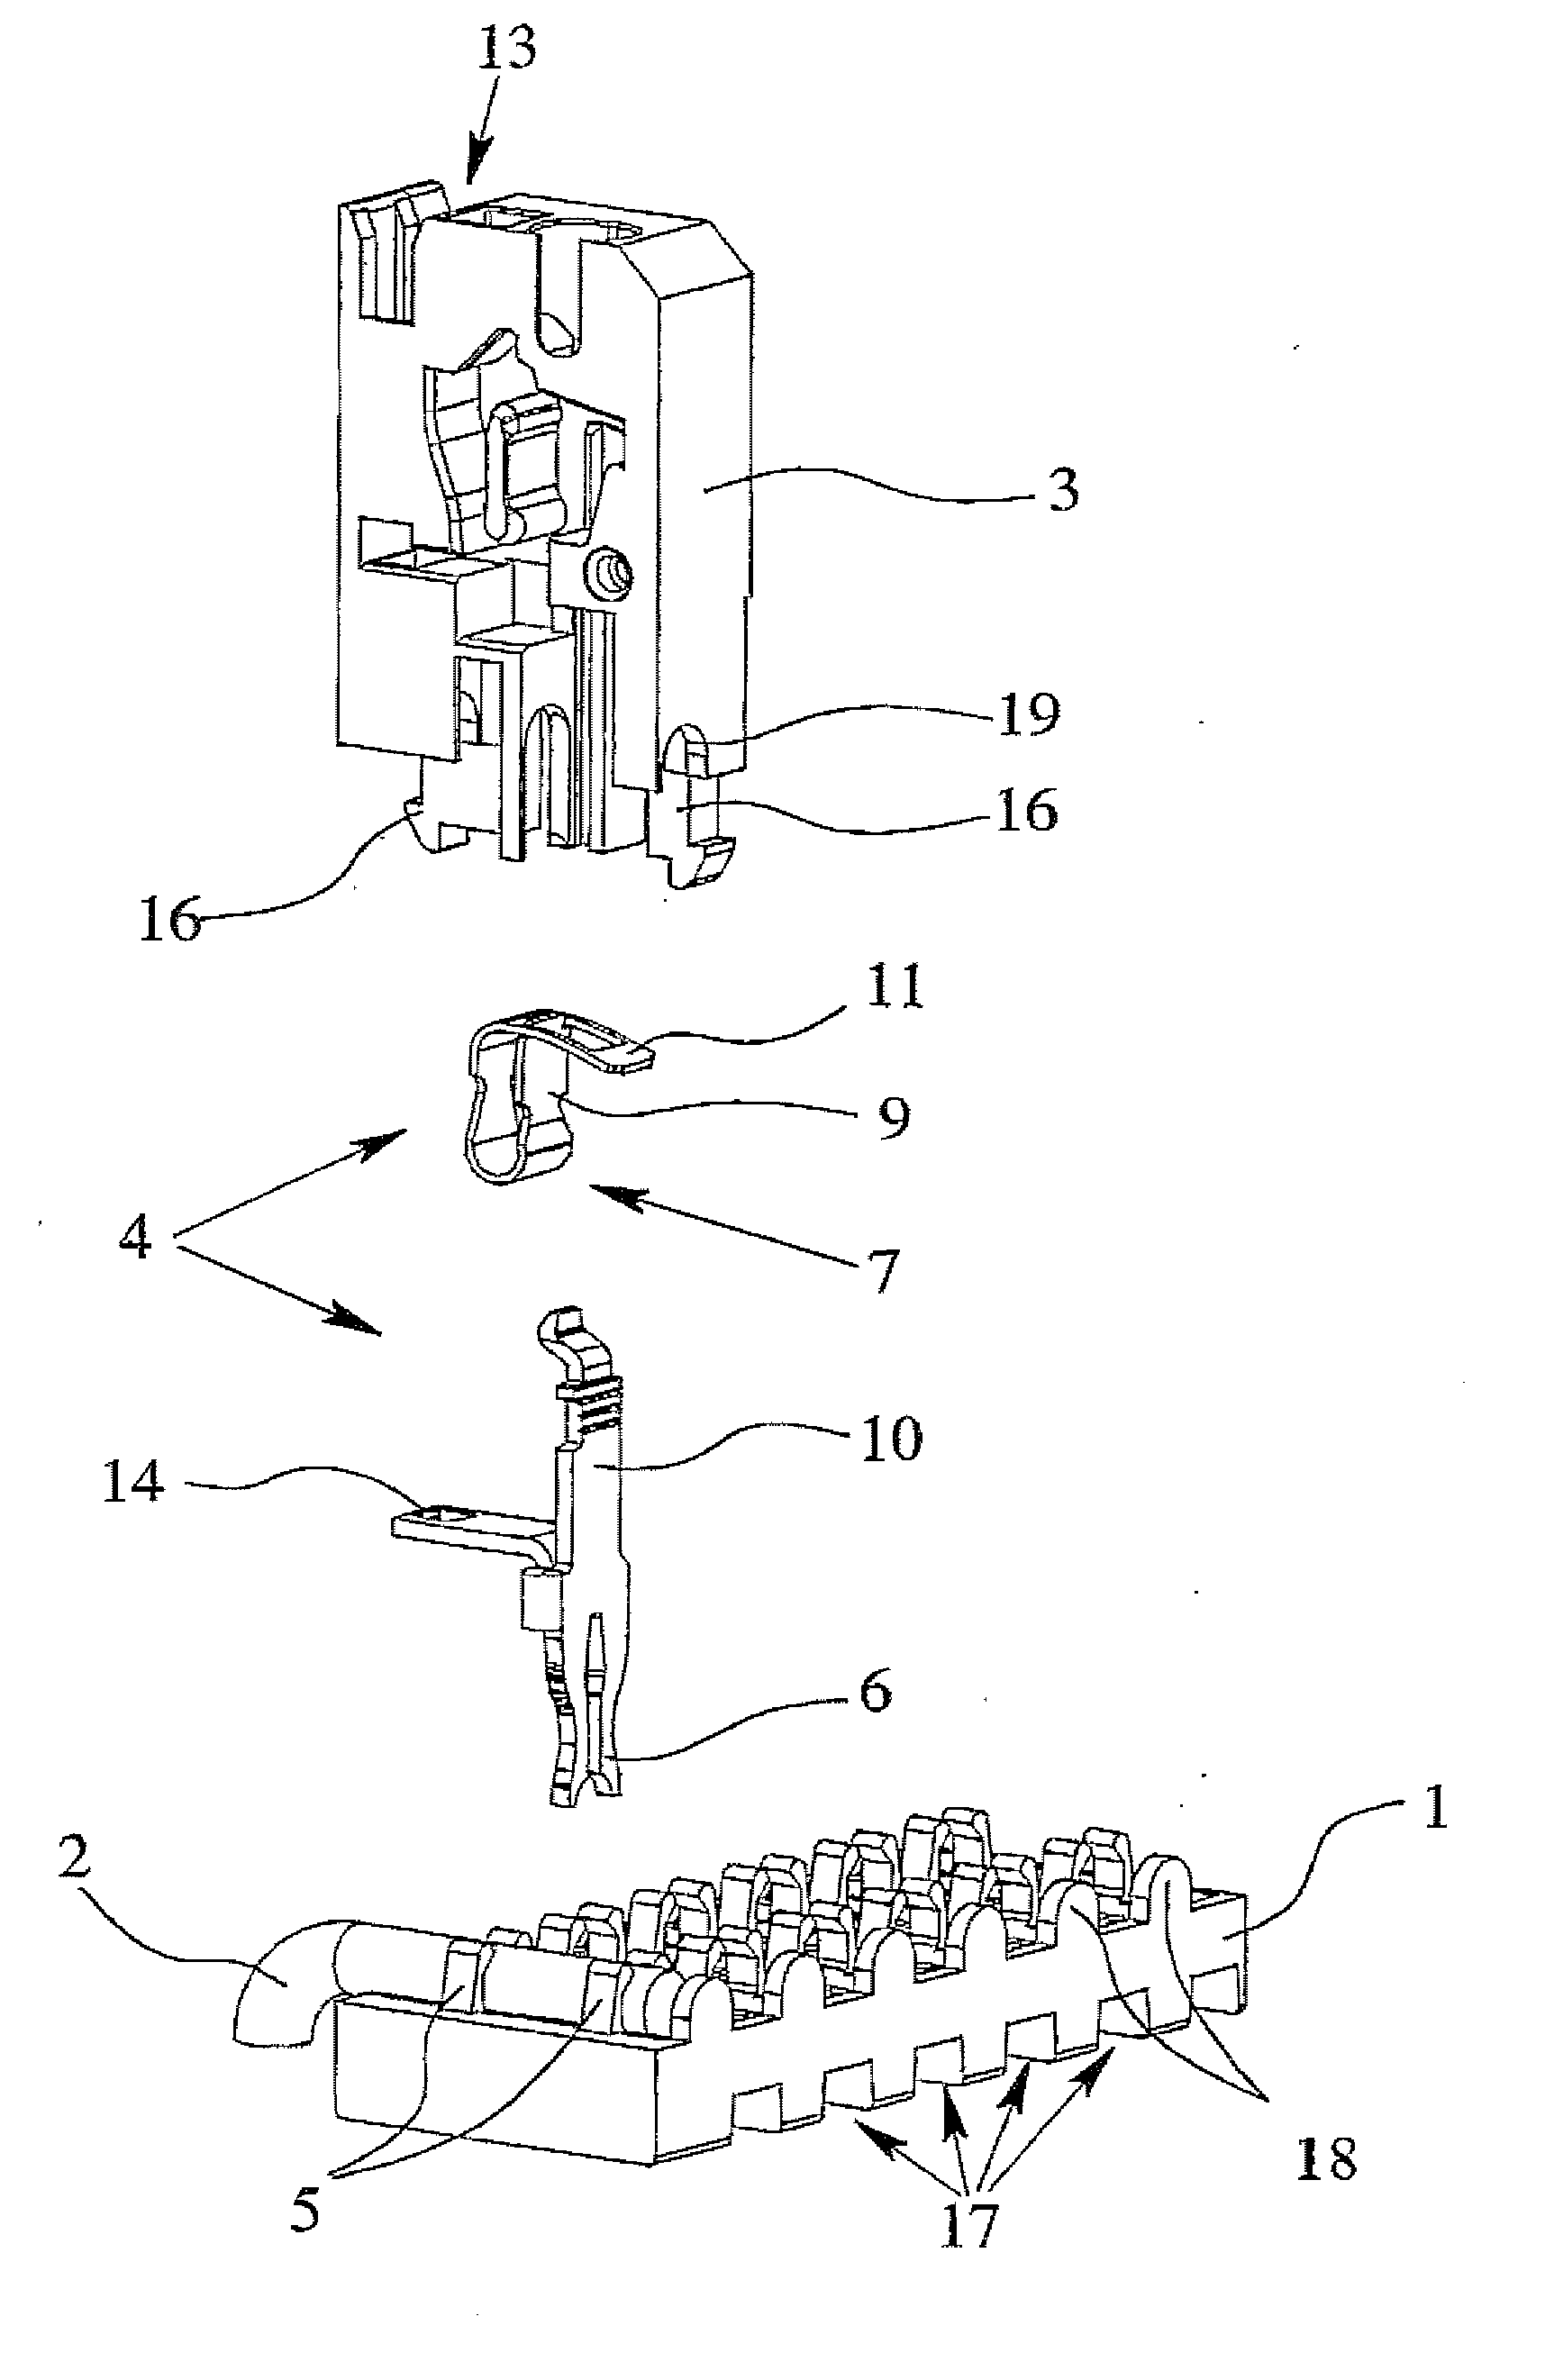 Electrical connection arrangement